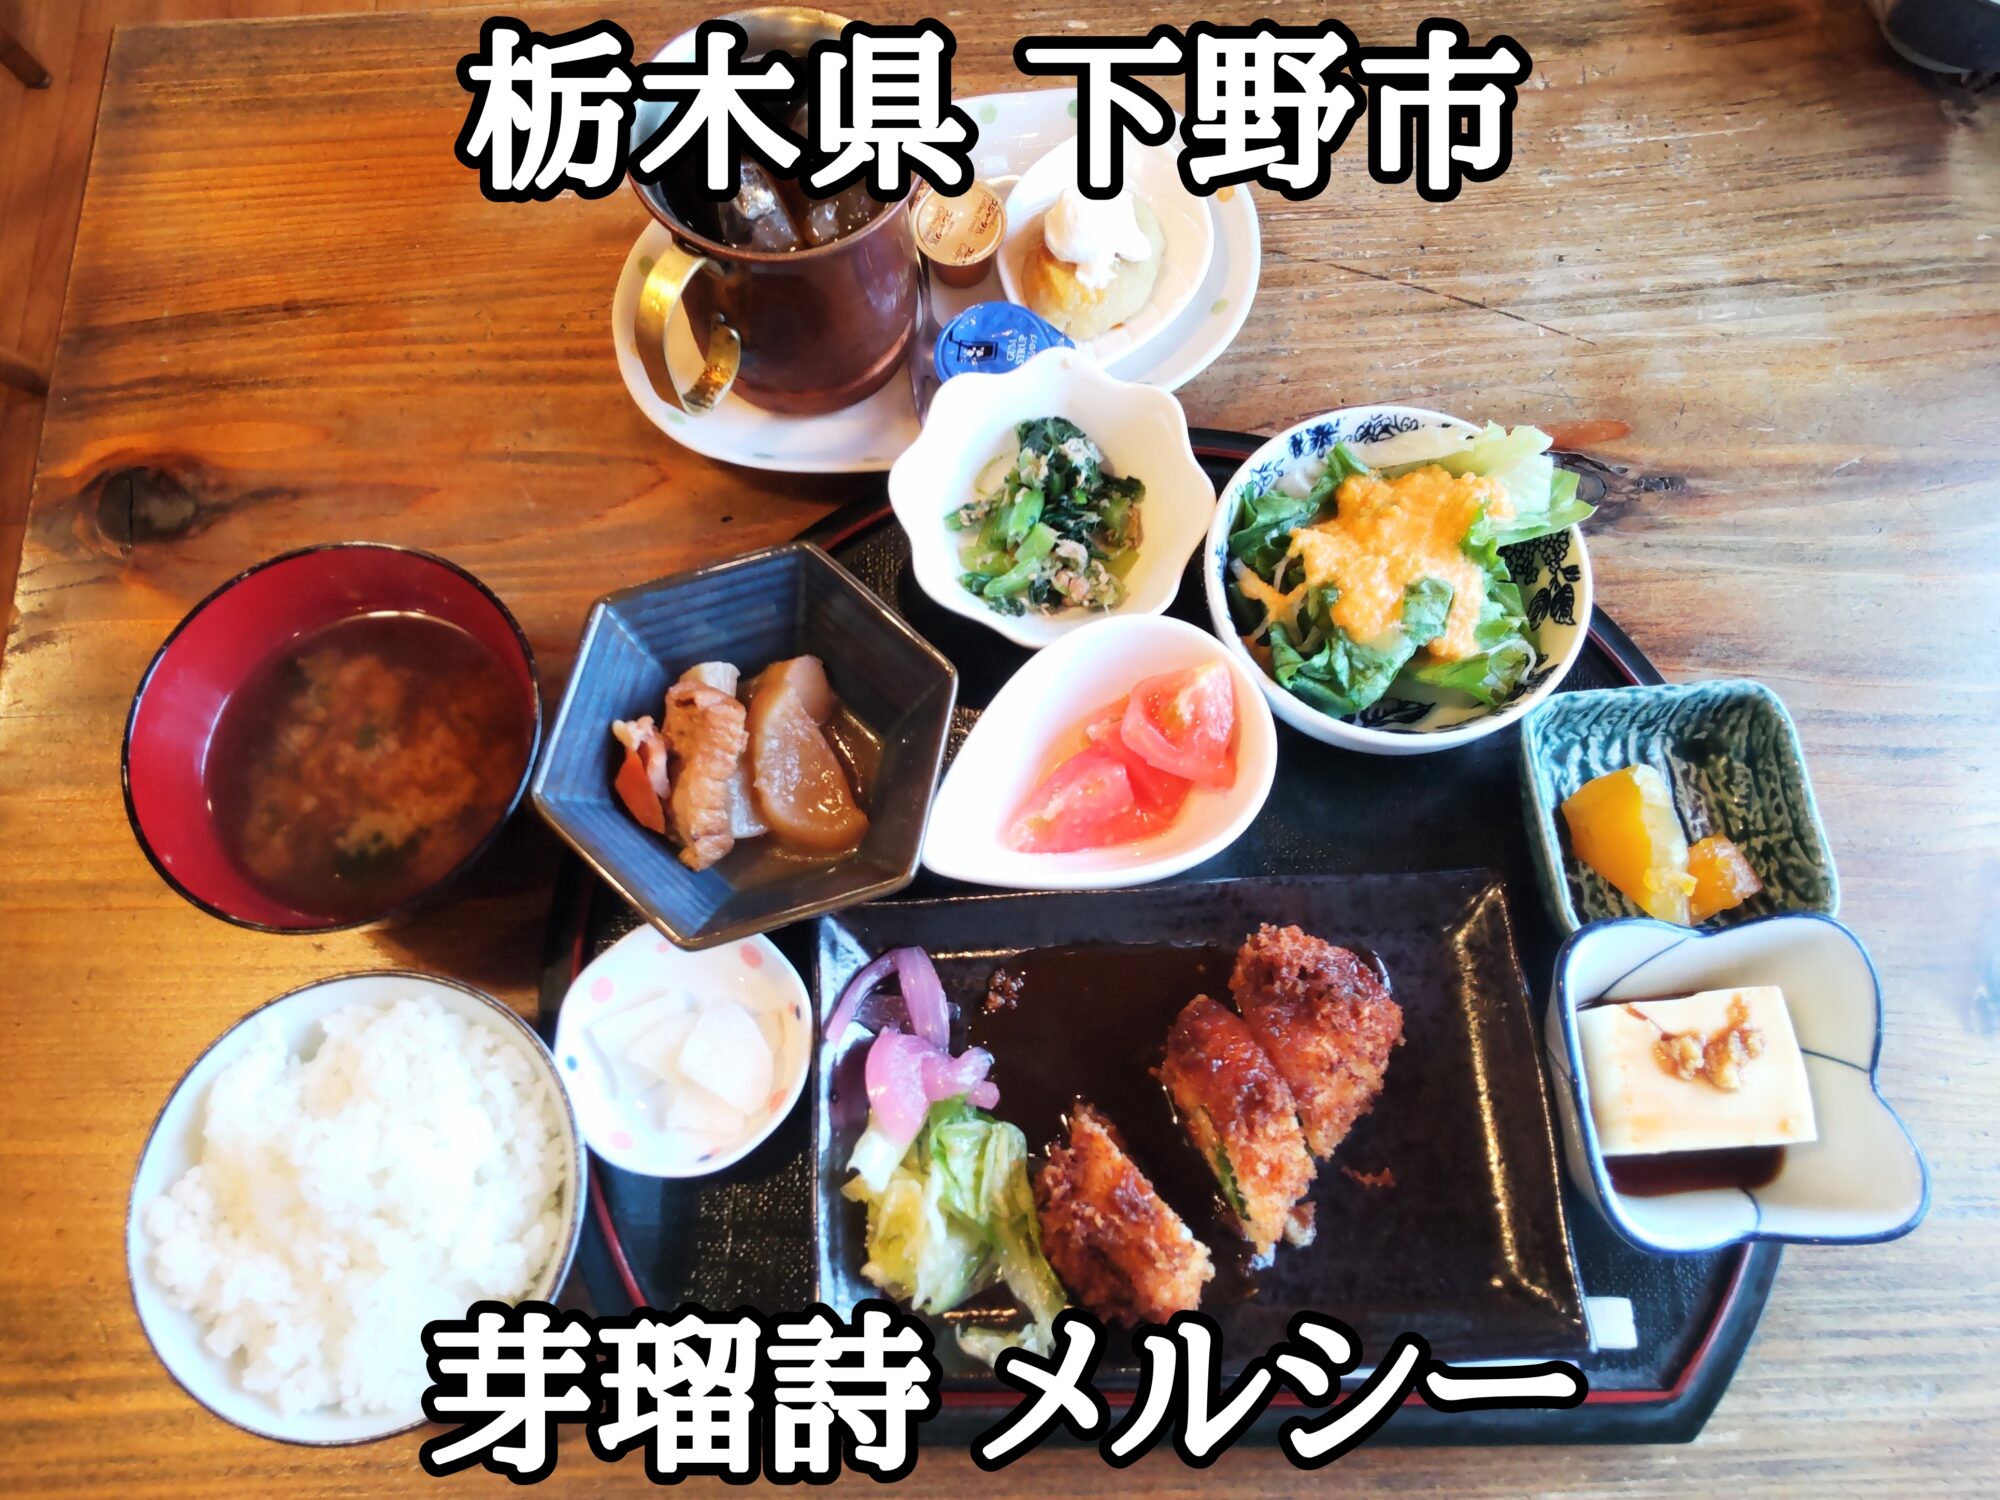 【栃木県】【下野市】「芽瑠詩」昭和レトロな喫茶店・メルシーでヘルシーな日替わり定食をありがとう